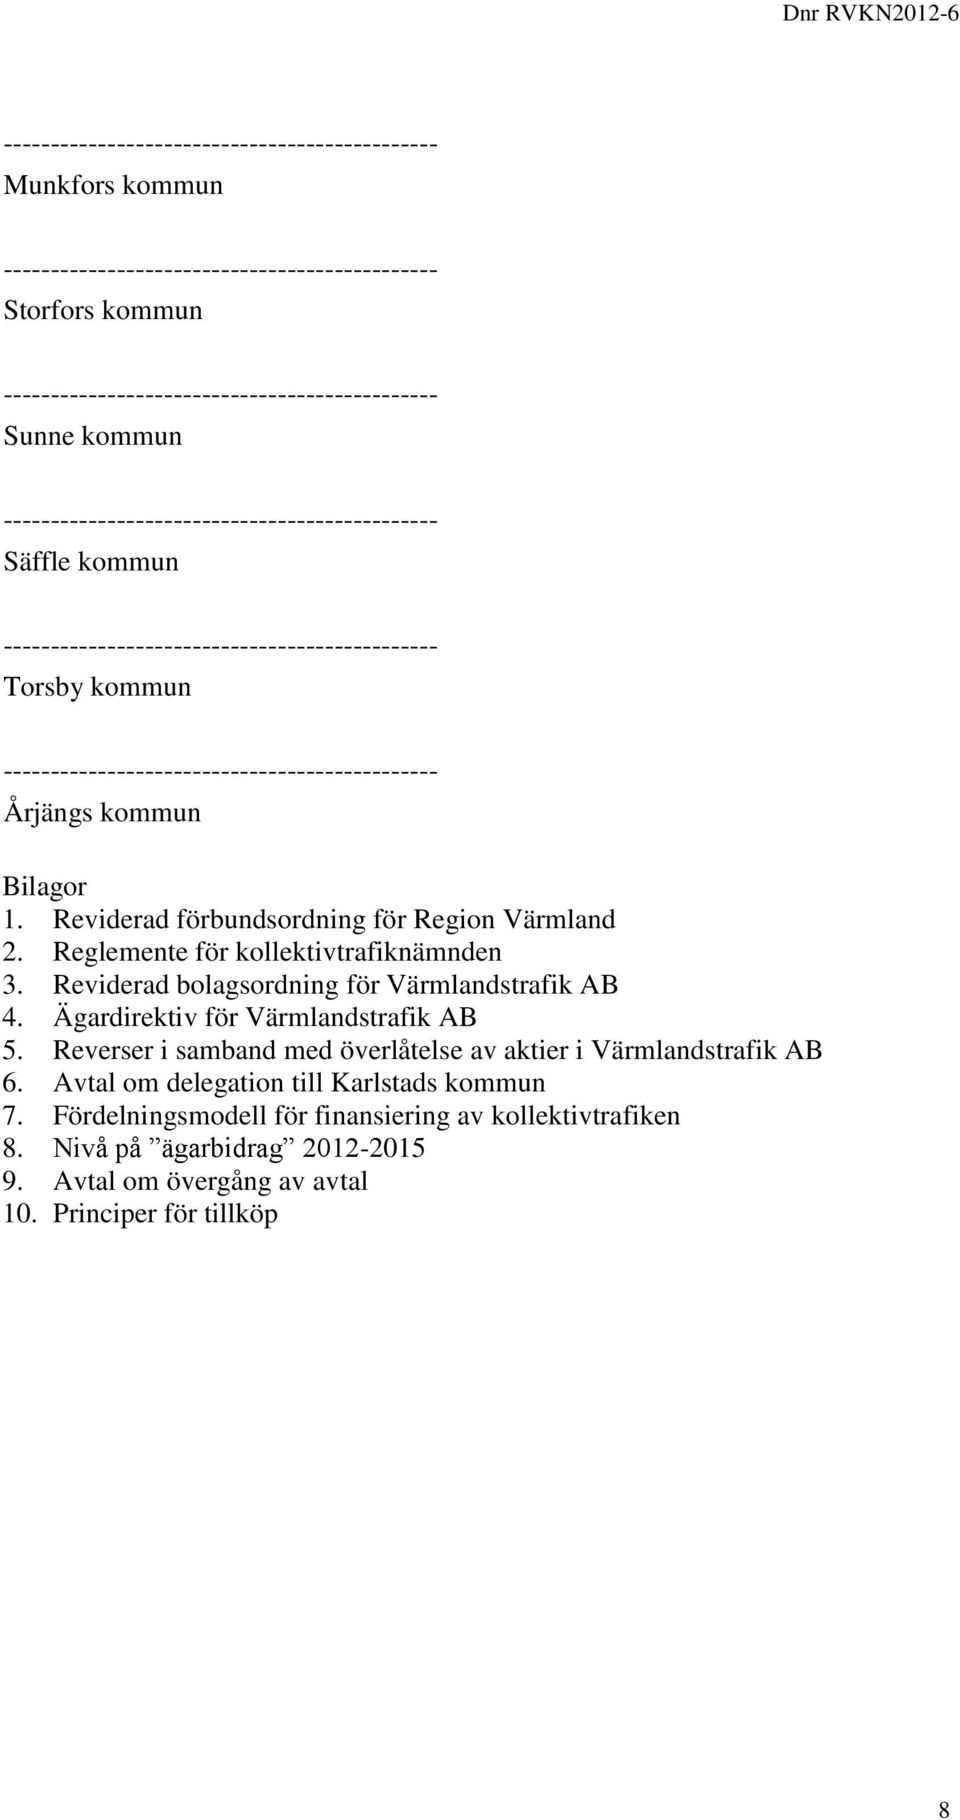 Reviderad bolagsordning för Värmlandstrafik AB 4. Ägardirektiv för Värmlandstrafik AB 5.